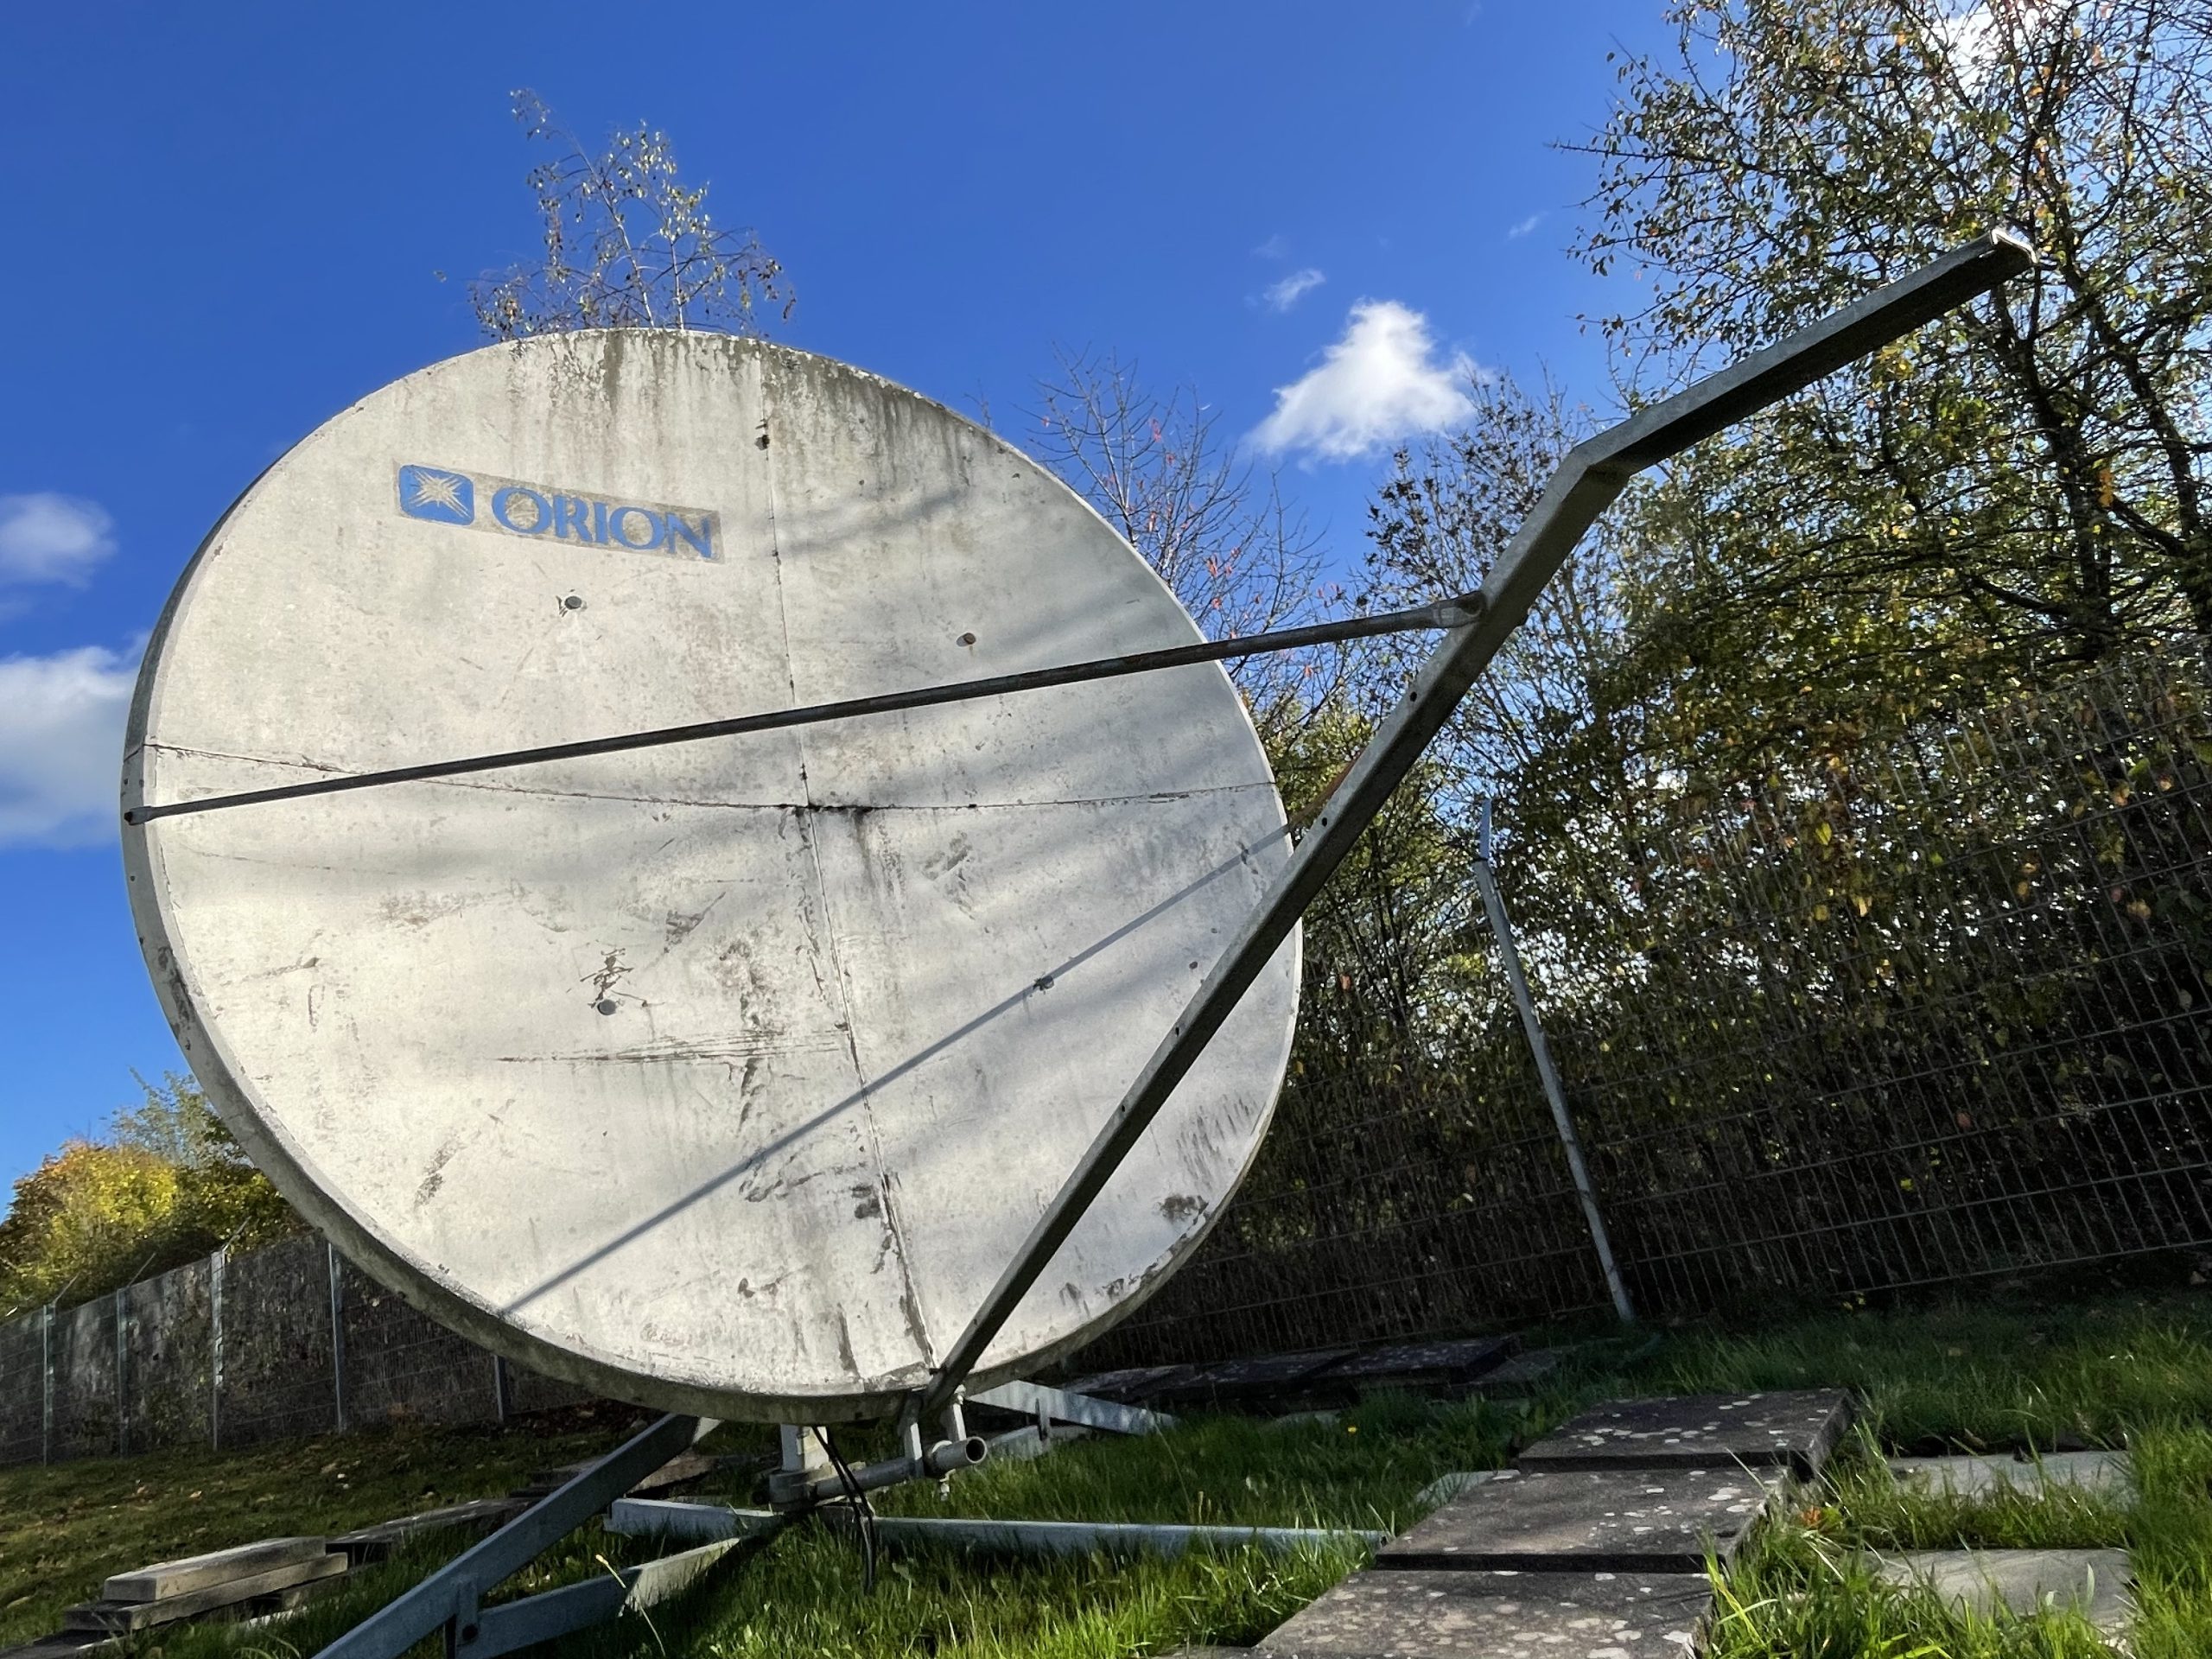 Prodelin 2.4m VSAT antenna installed for Orion:Cyberstar:Loral Skynet:Telesat